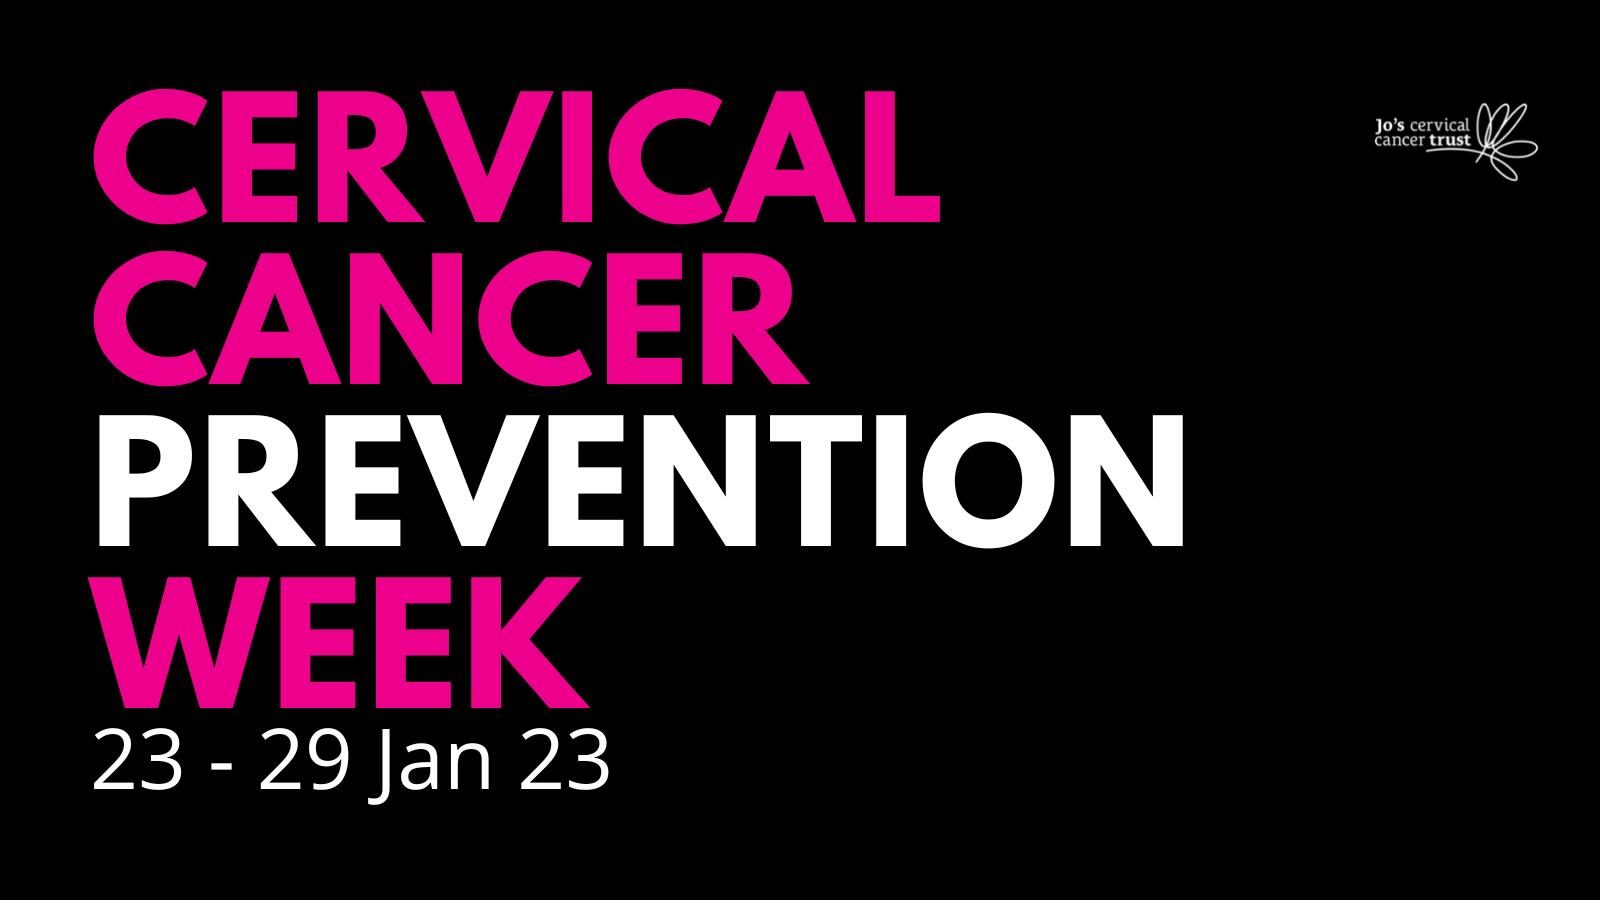 Cervical cancer prevention week